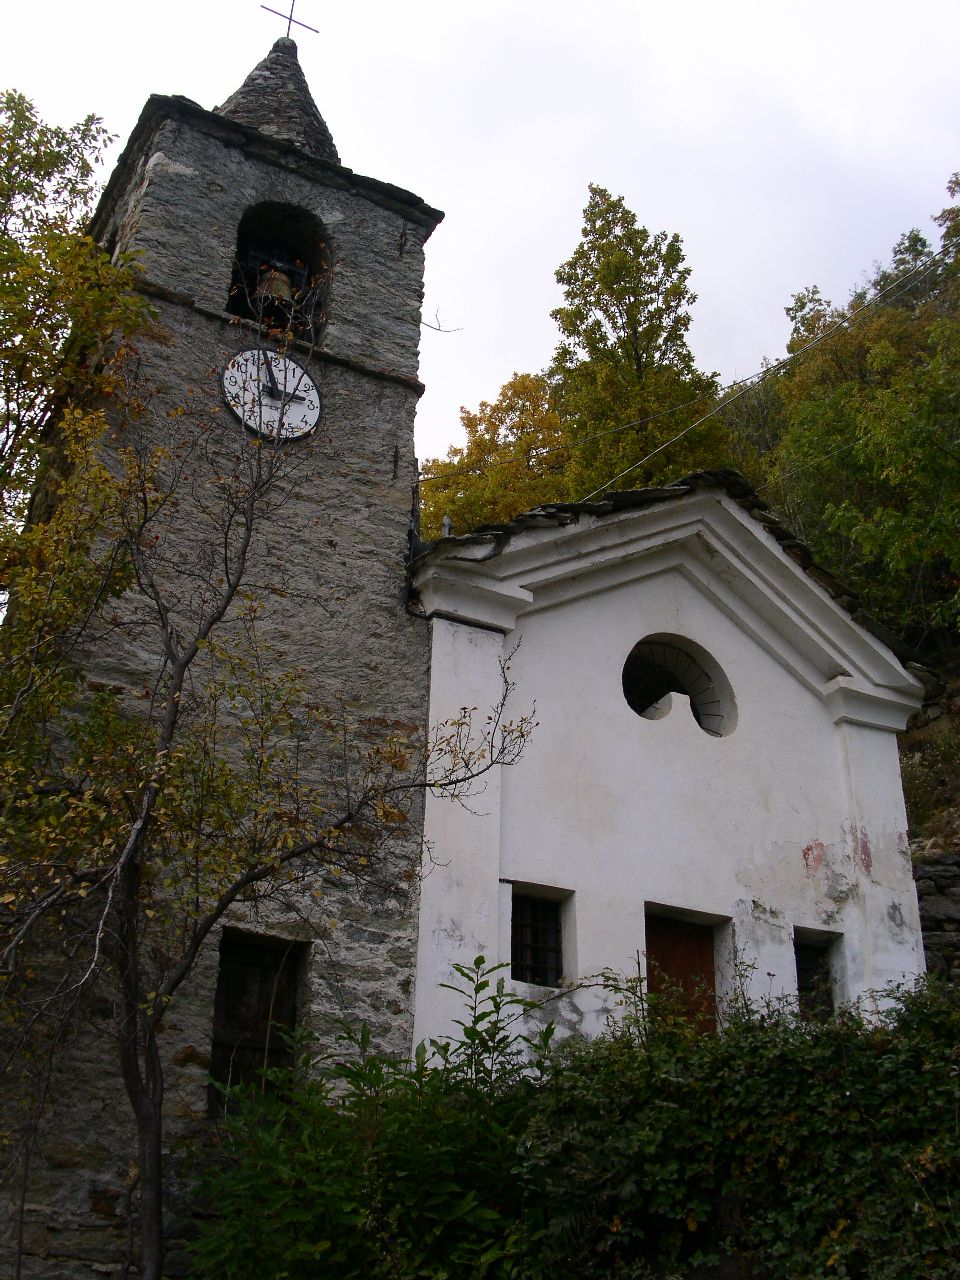 The Riasseu chapel